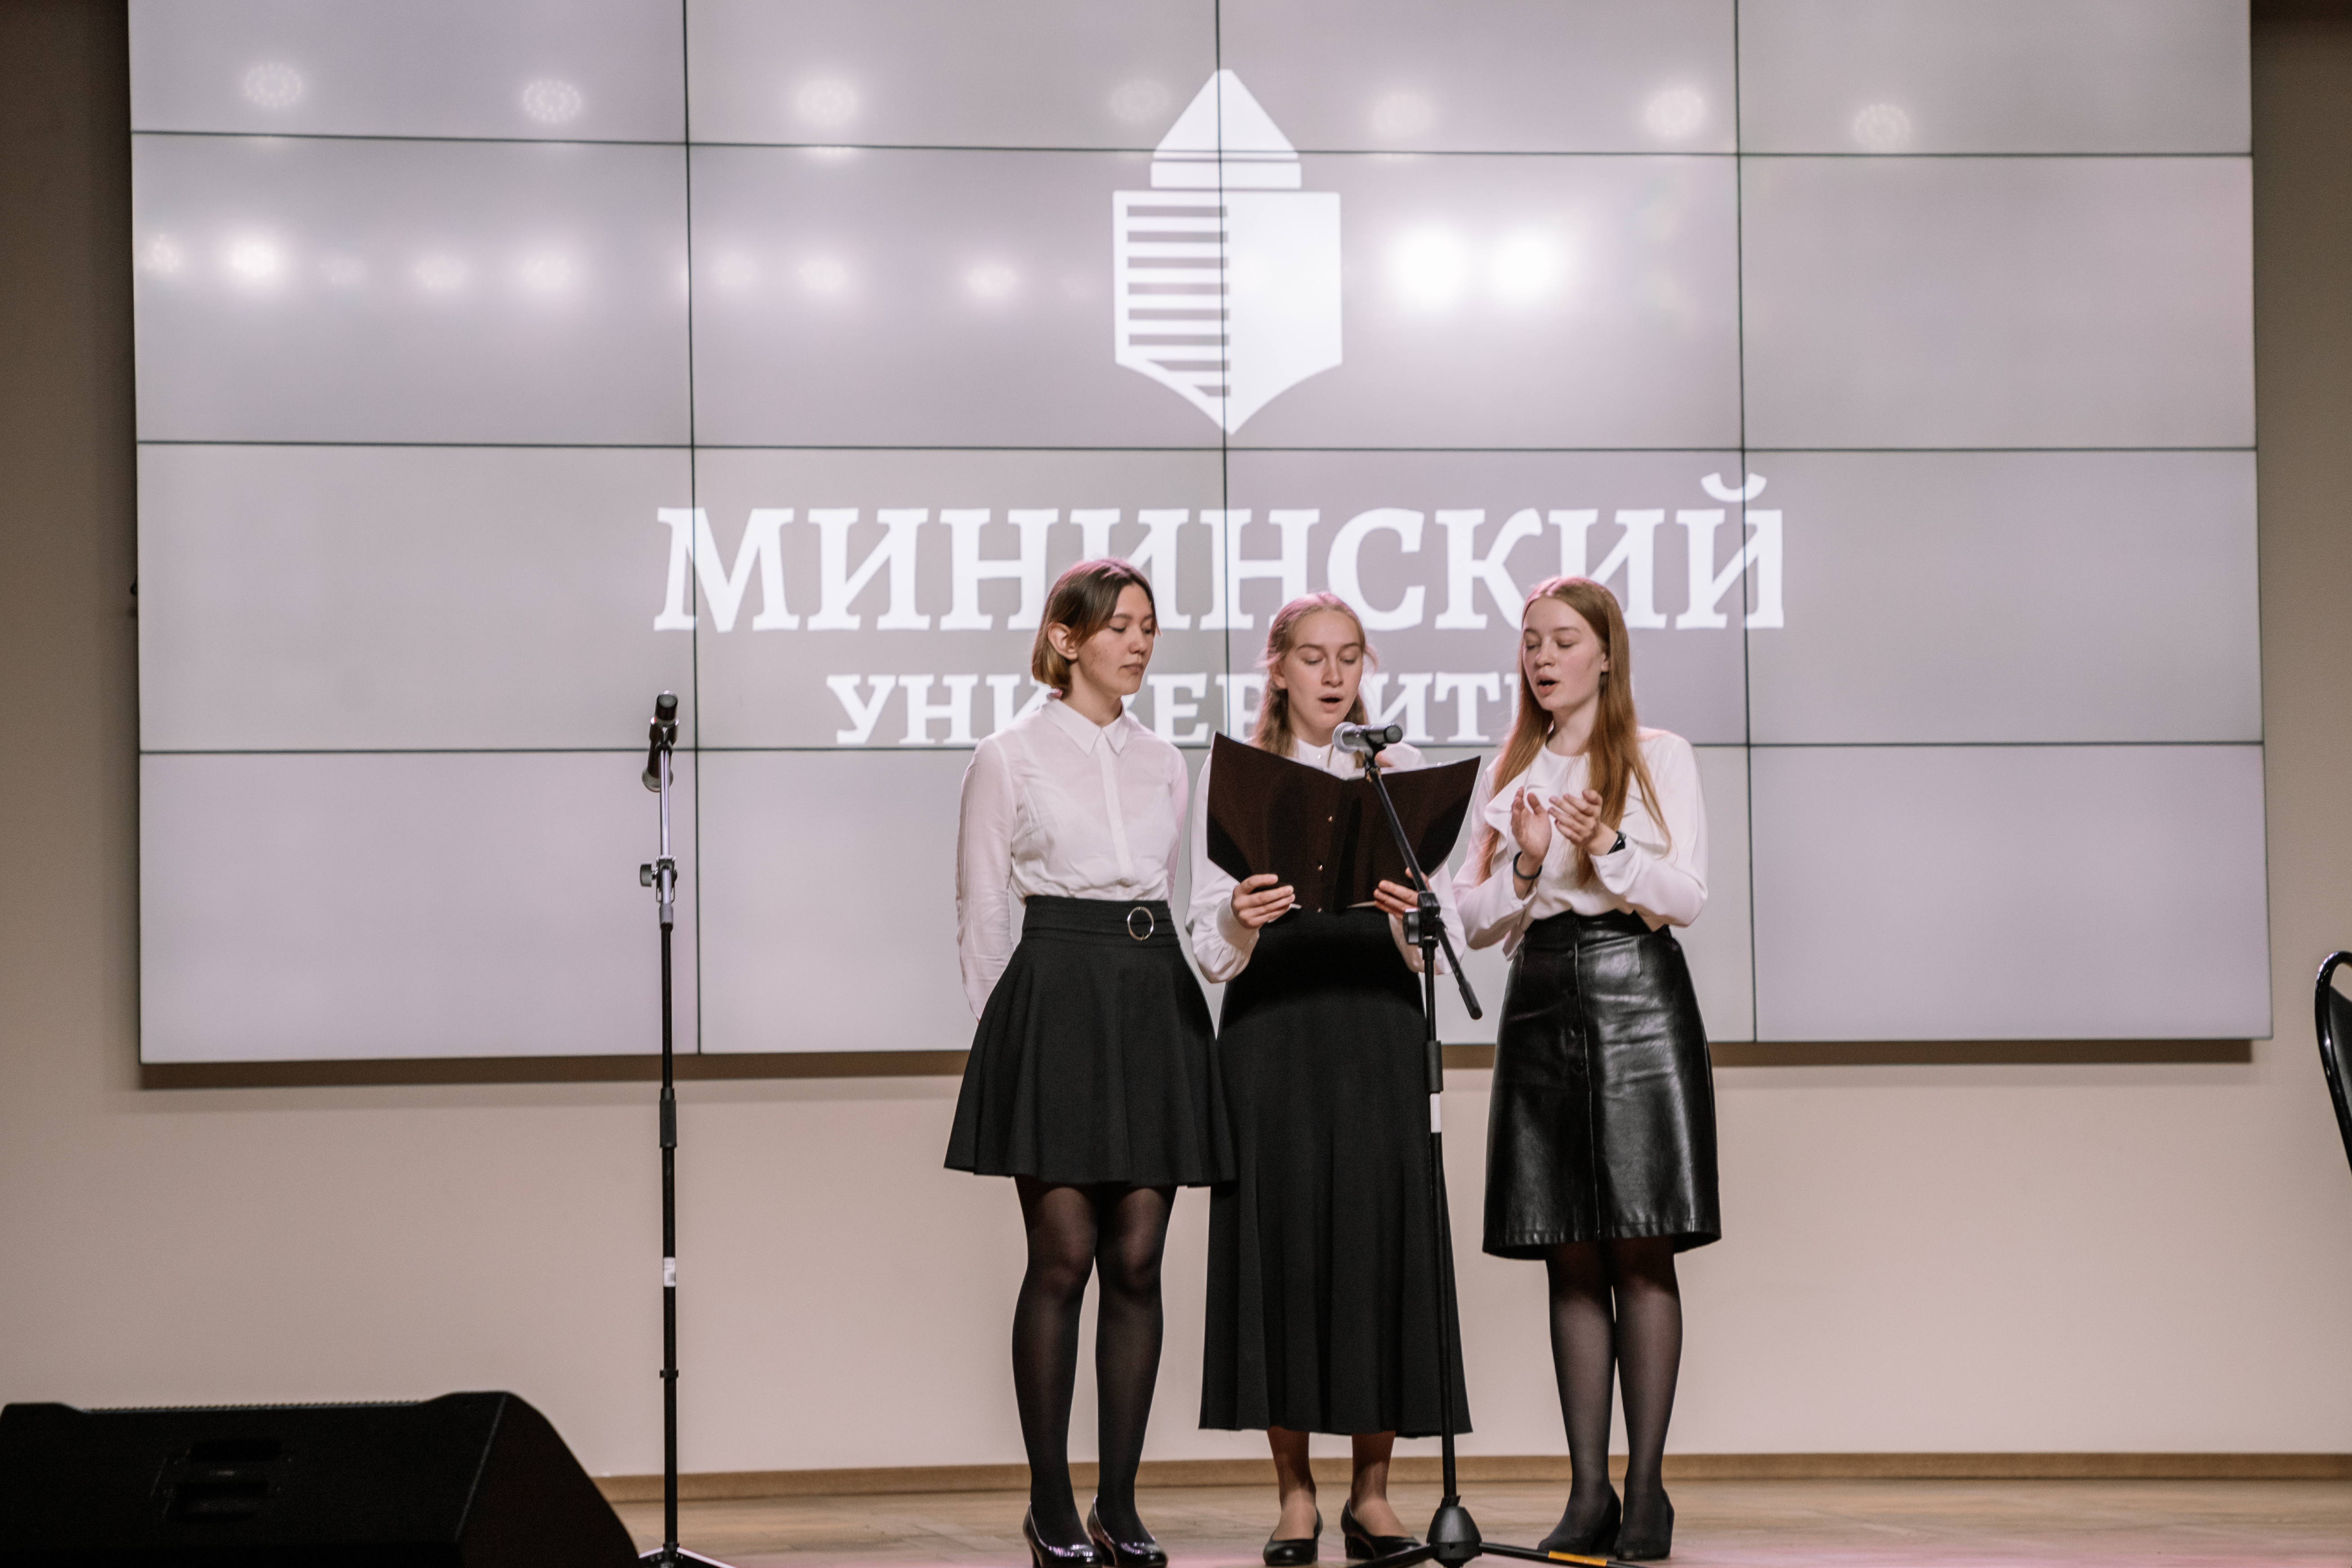 Областная олимпиада по музыкальному образованию прошла в Мининском университете